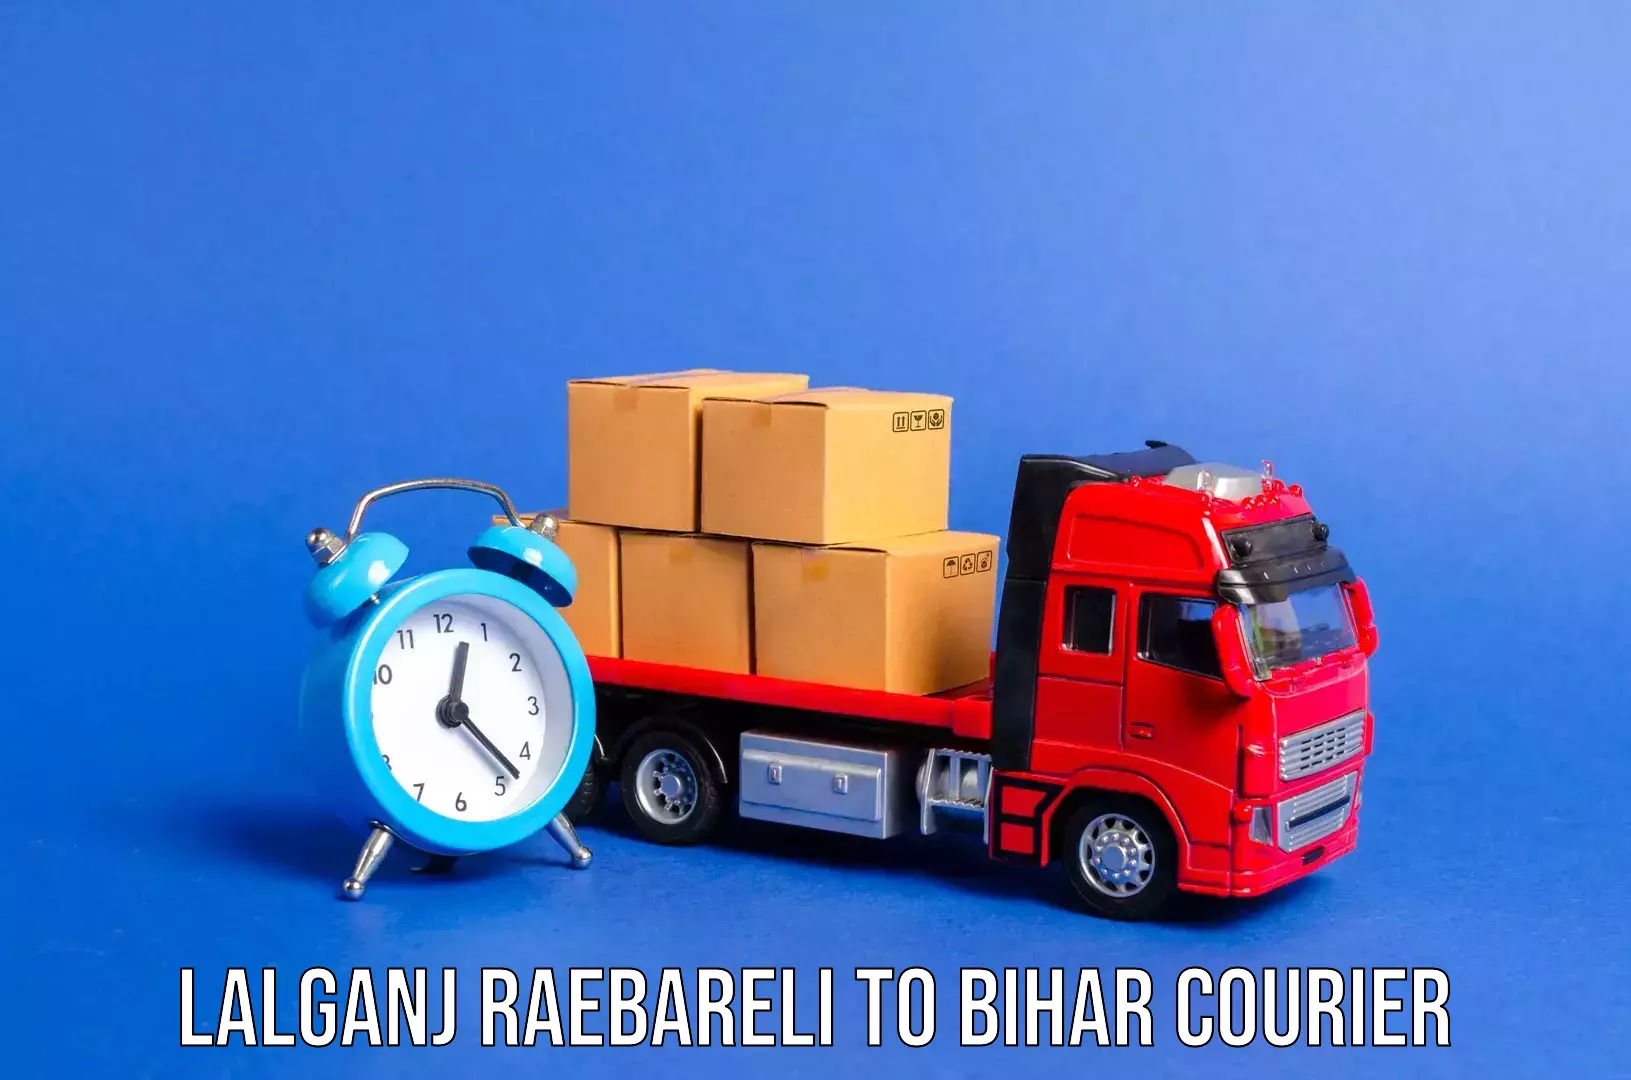 Baggage transport professionals Lalganj Raebareli to Katihar